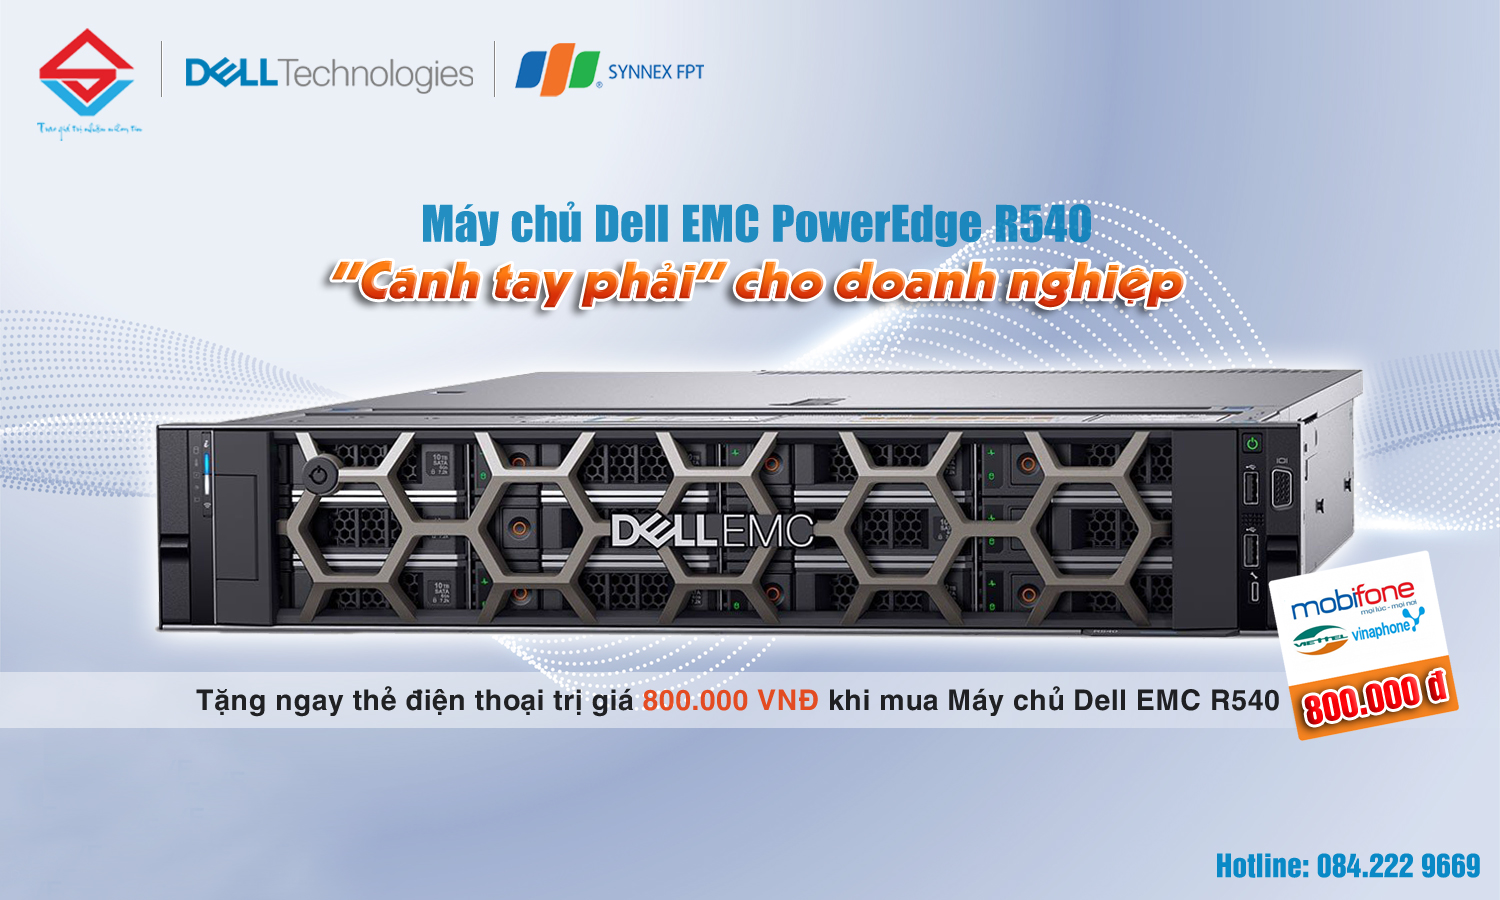 Máy chủ Dell EMC PowerEdge 14 – R540: Cánh tay phải cho doanh nghiệp